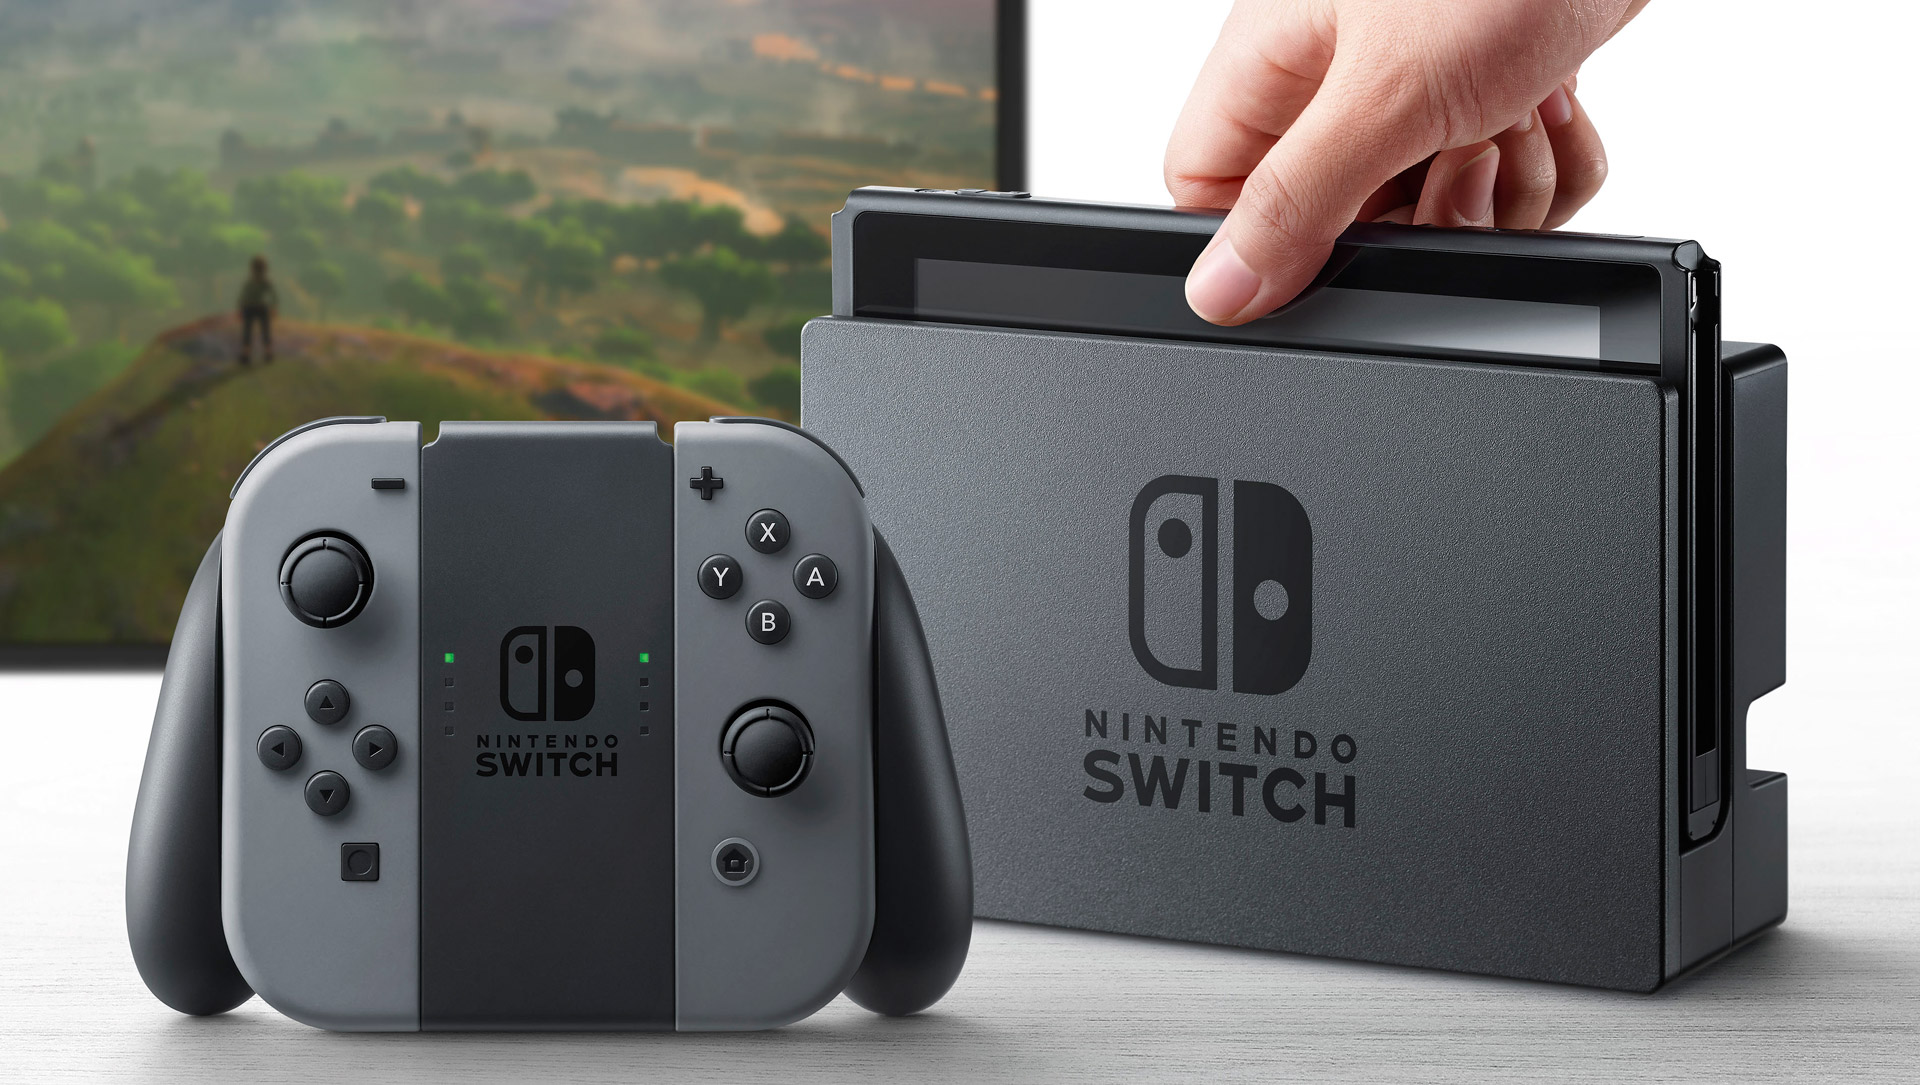 Nintendo Switch 2017, Nintendo Switch new, Nintendo Switch